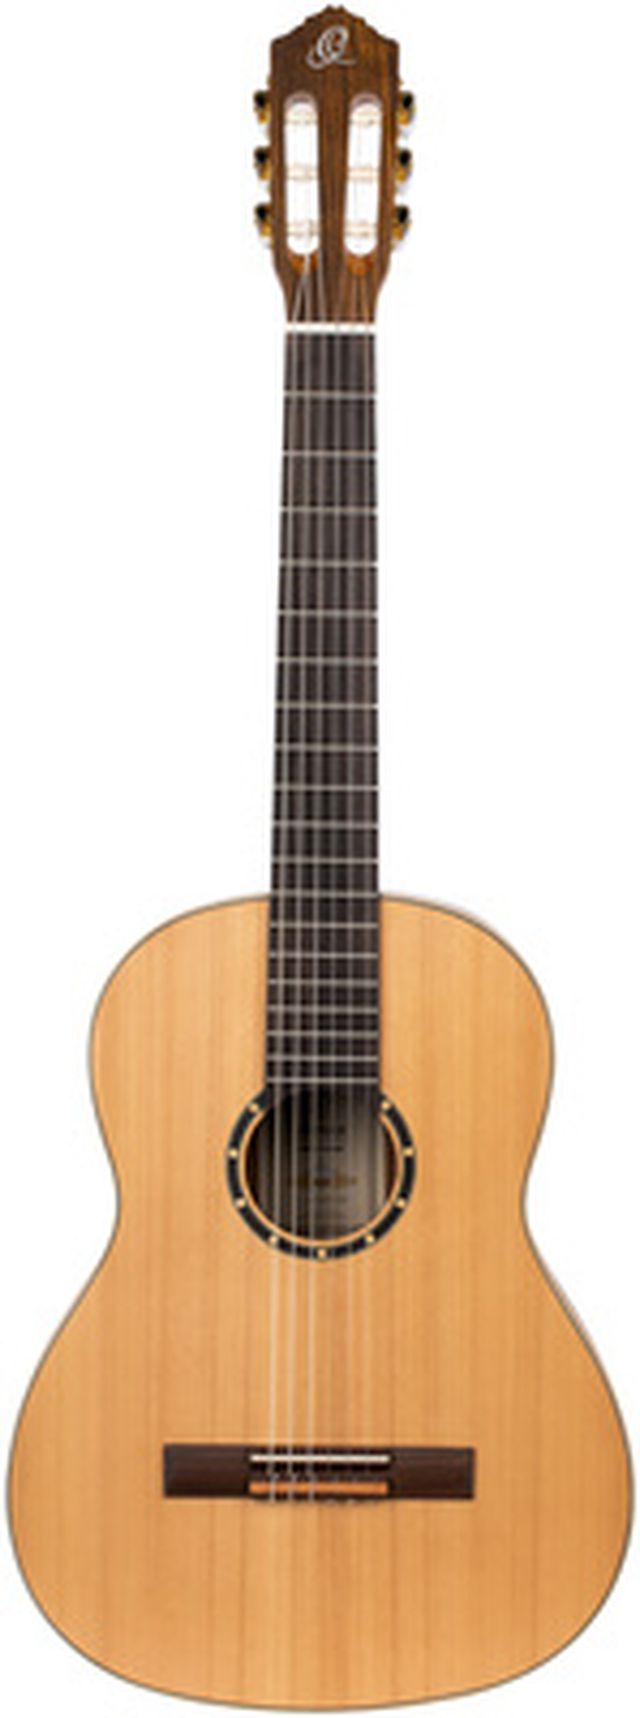 Ortega R131 Classical Guitar